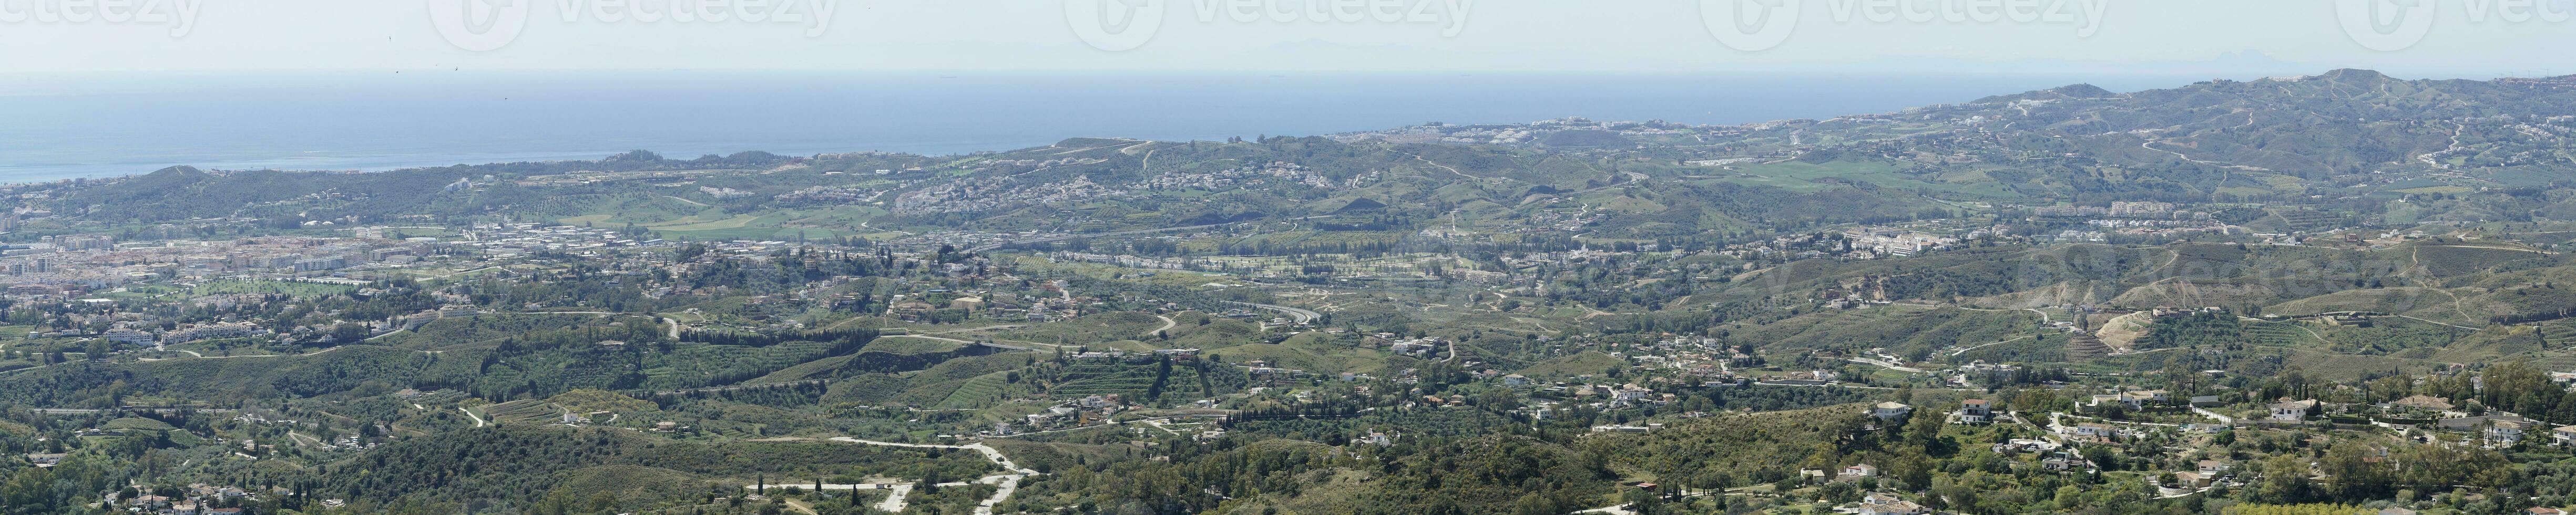 Panorama- Aussicht auf Meer Ufer von Mijas Stadt, Andalusien, Spanien foto